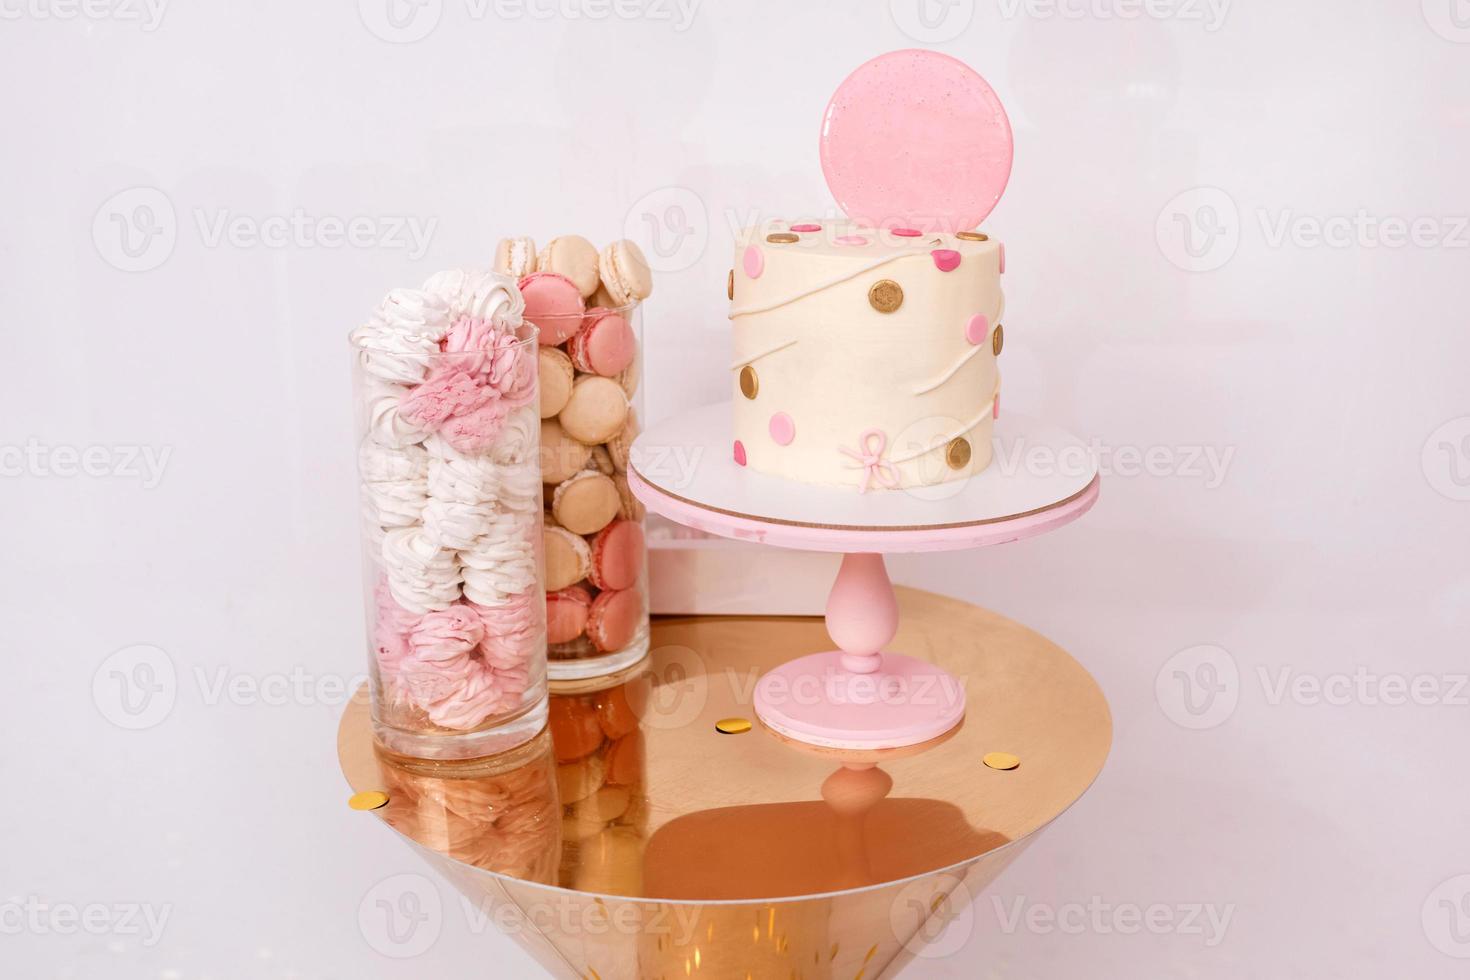 bella torta di compleanno con decorazioni rosa per il compleanno di un bambino. barretta di cioccolato con amaretti e marshmallow. foto